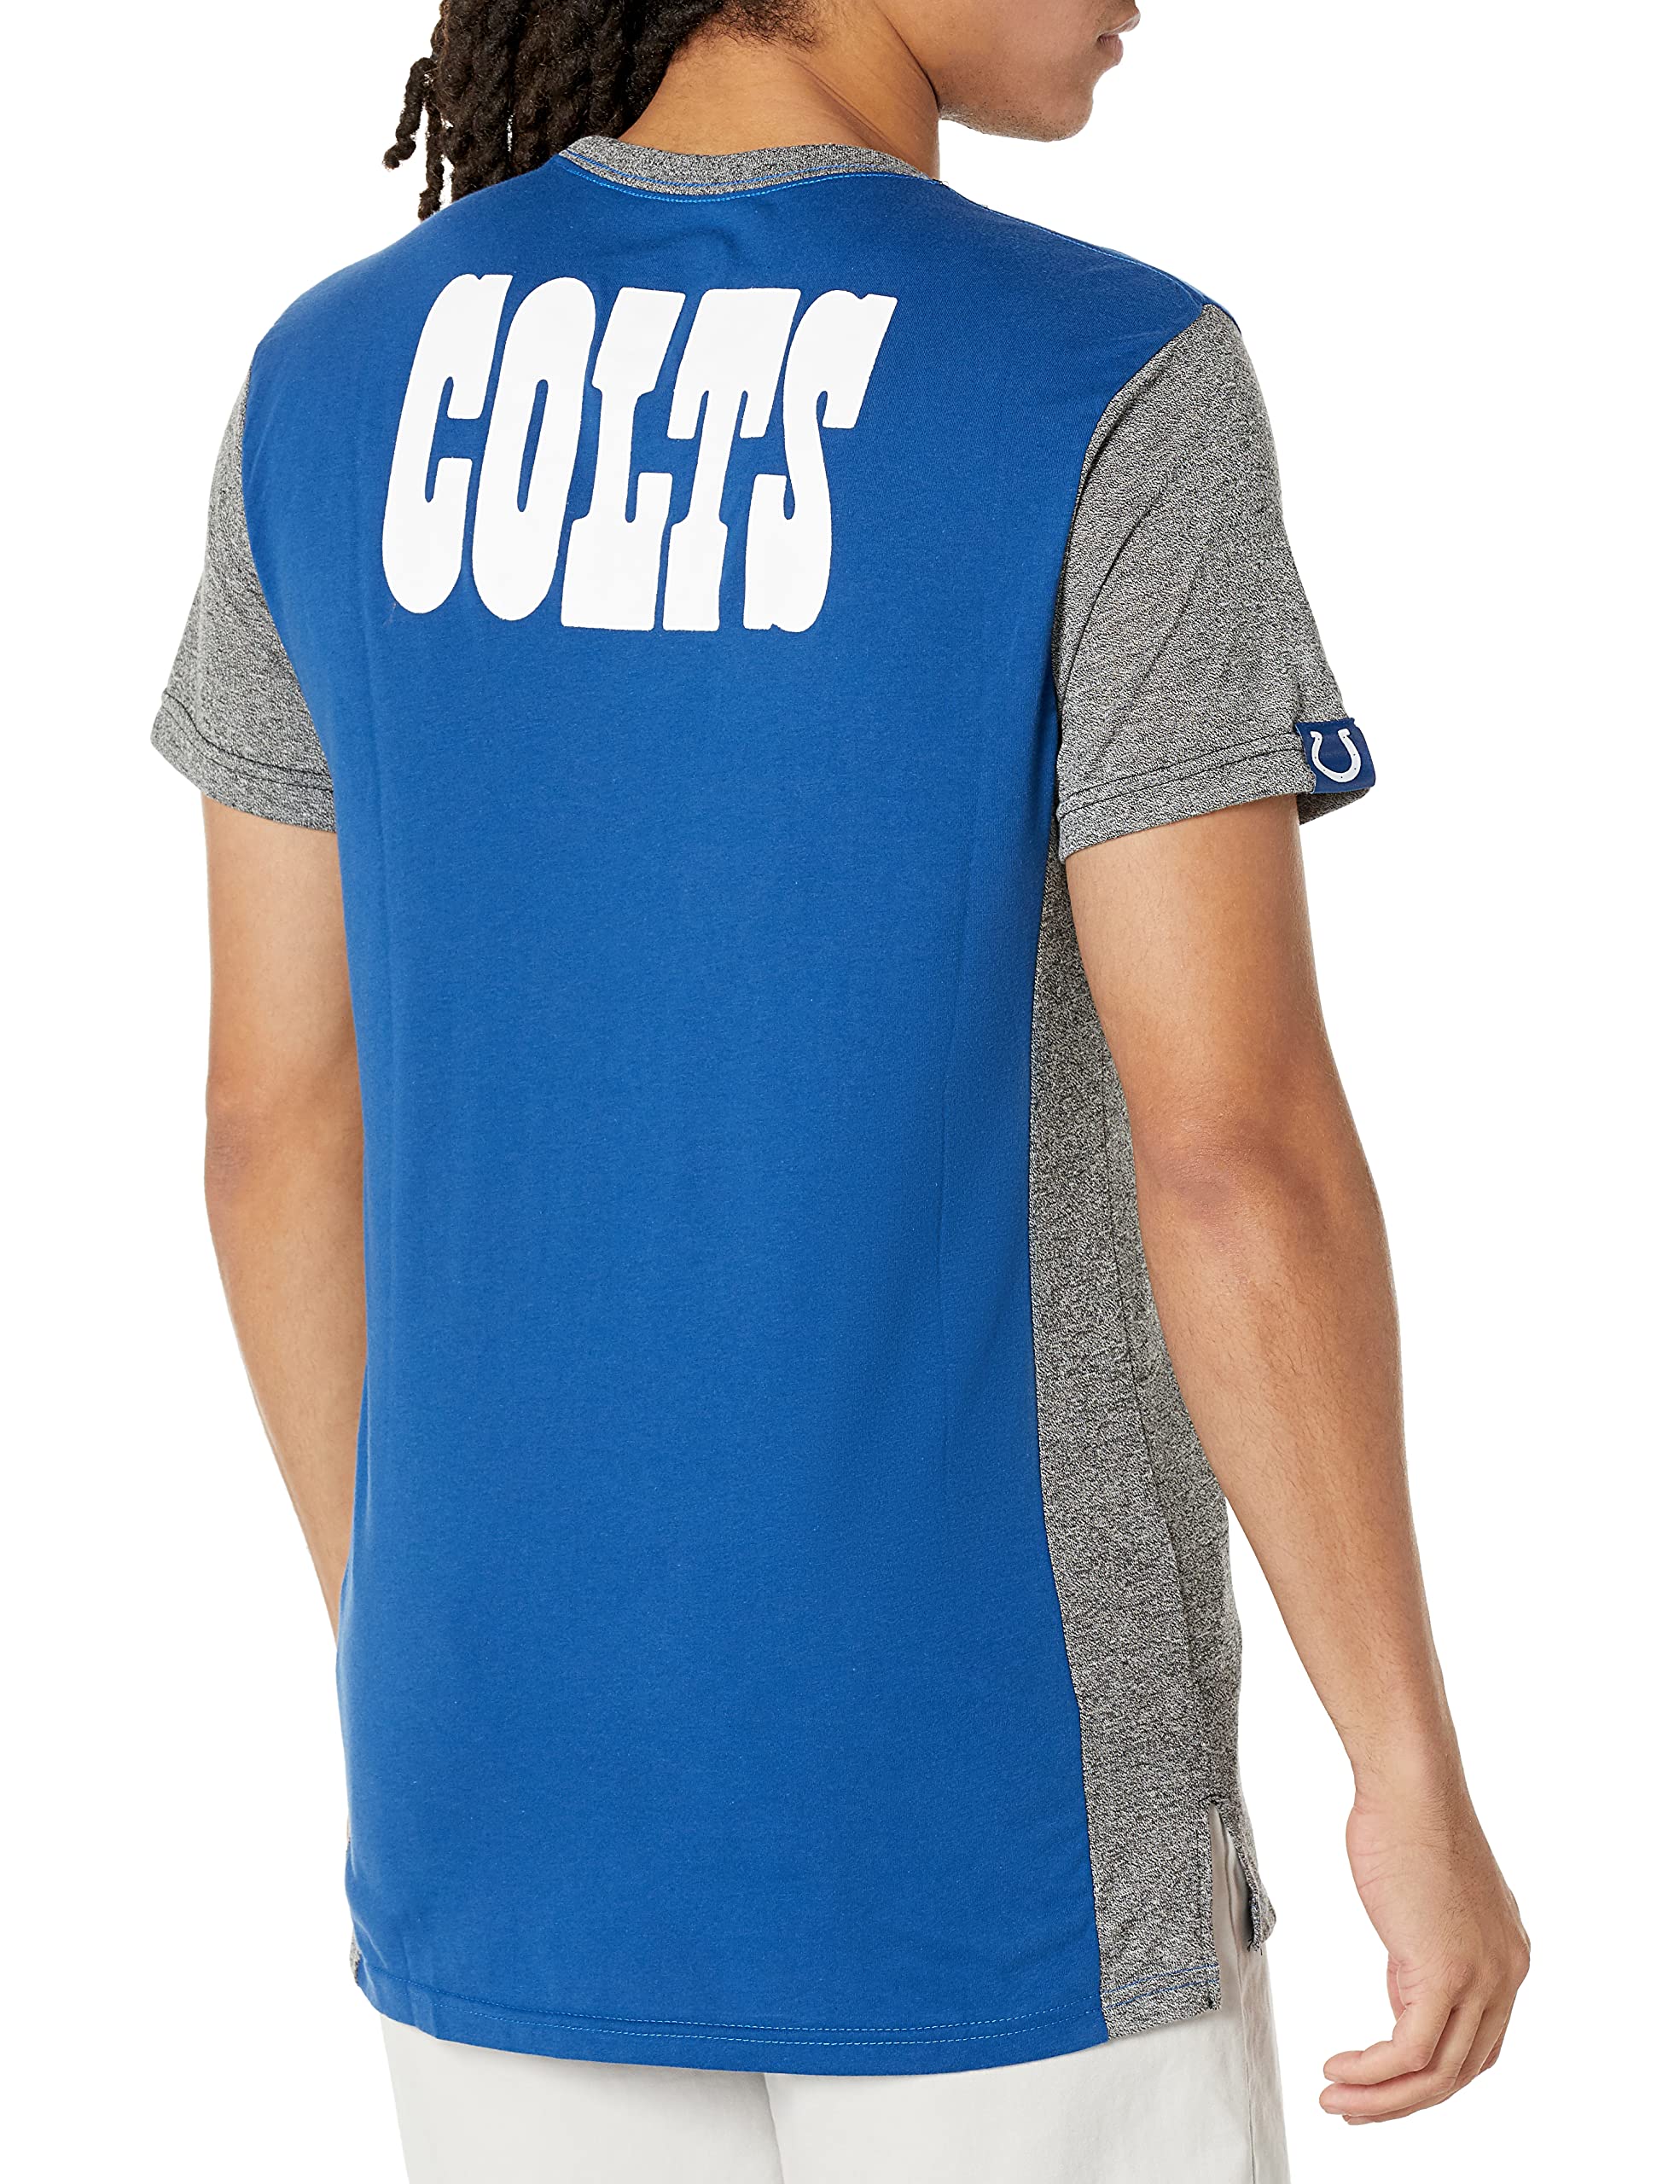 Ultra Game NFL Indianapolis Colts Mens T-Shirt Raglan Block Short Sleeve Tee Shirt|Indianapolis Colts